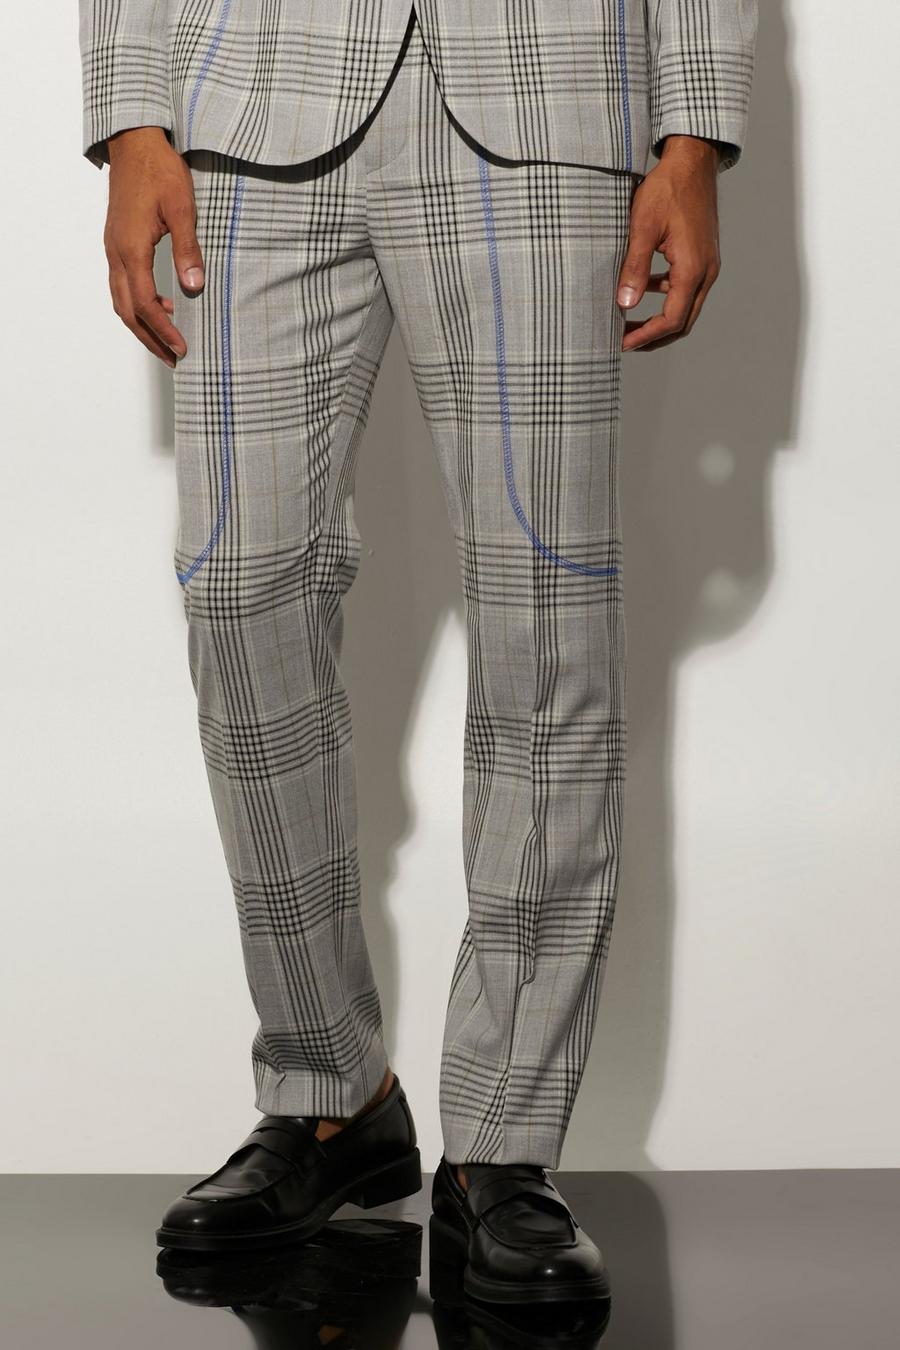 אפור grigio מכנסיים בגזרה ישרה עם הדפס משבצות ותפרים בצבעים מנוגדים